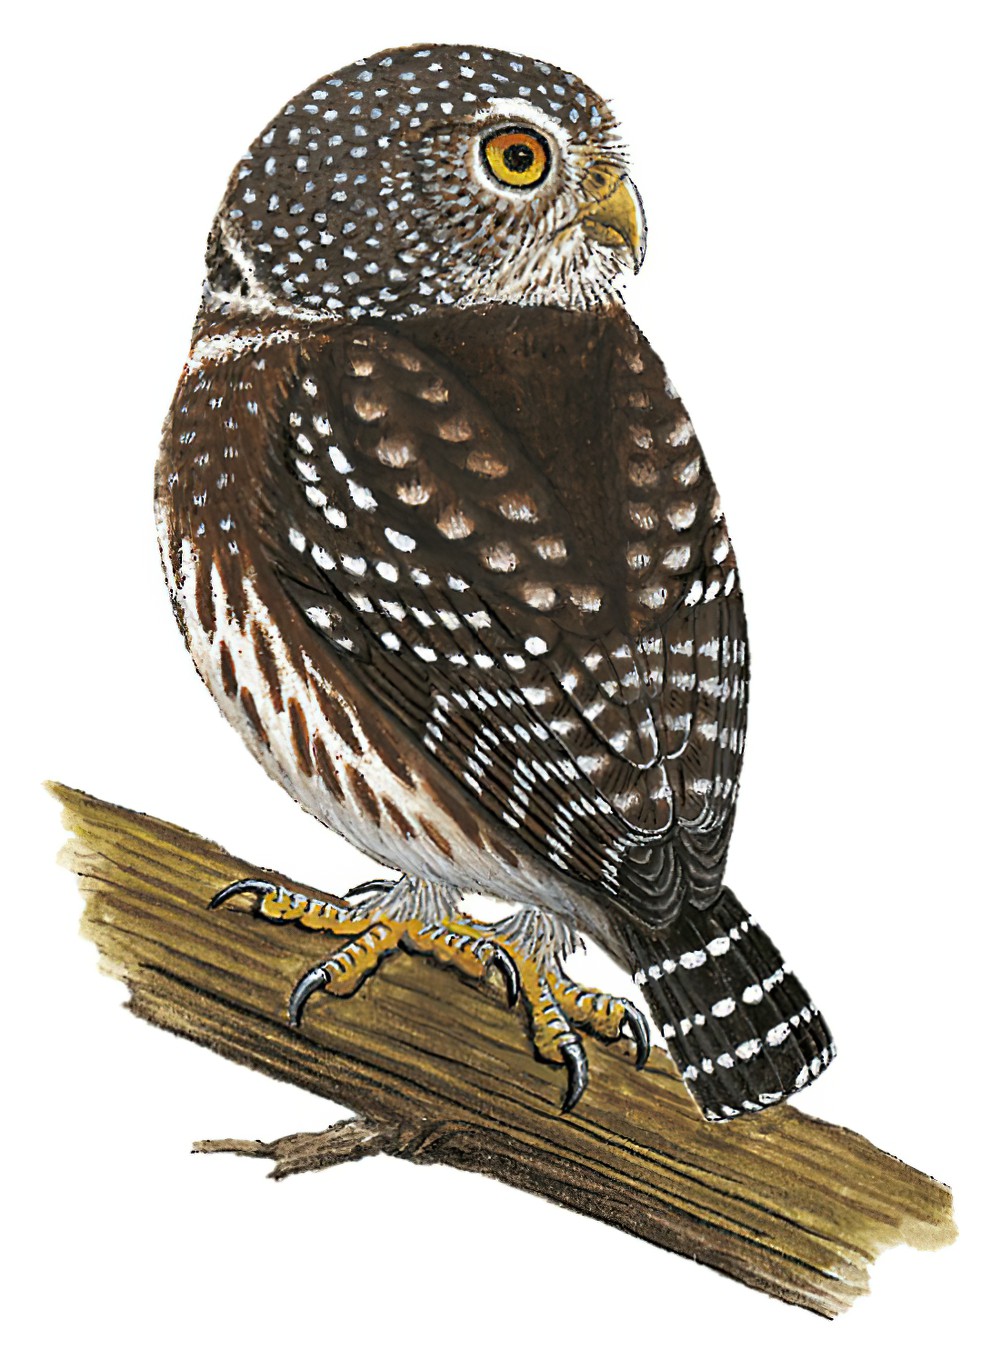 Subtropical Pygmy-Owl / Glaucidium parkeri